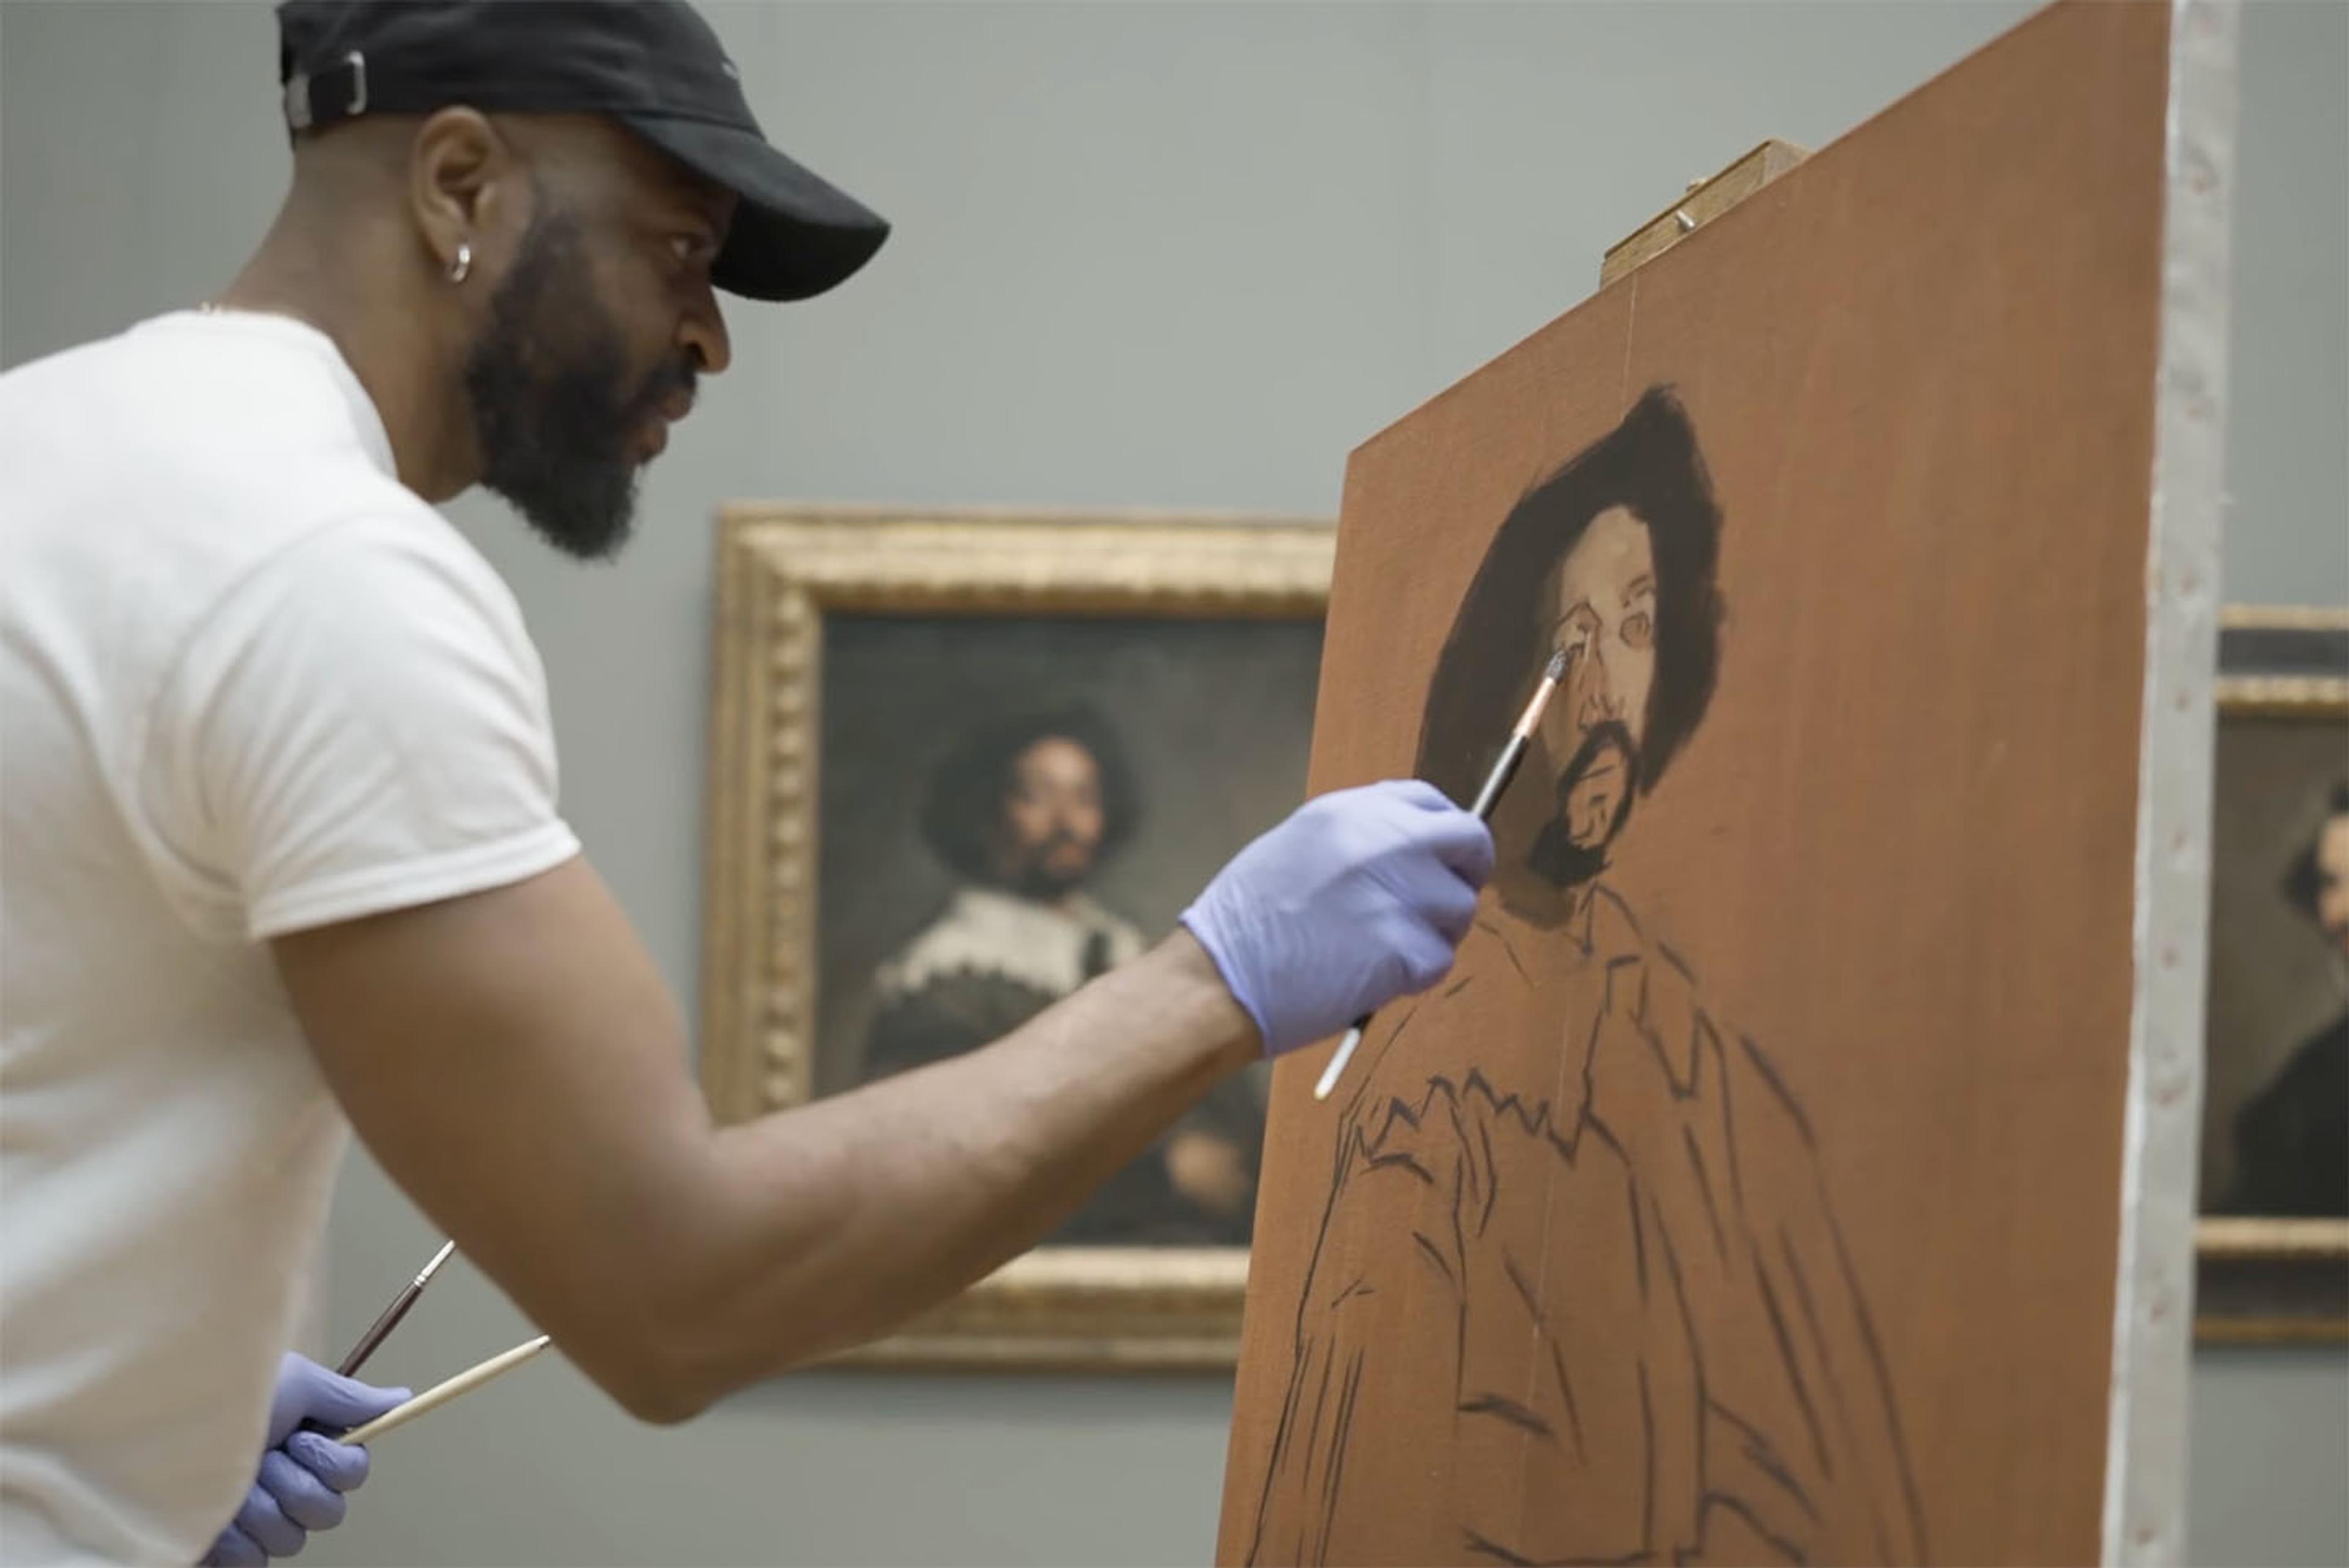 Painter Jas Knight copying Velazquez's "Juan de Pareja" in The Met's galleries